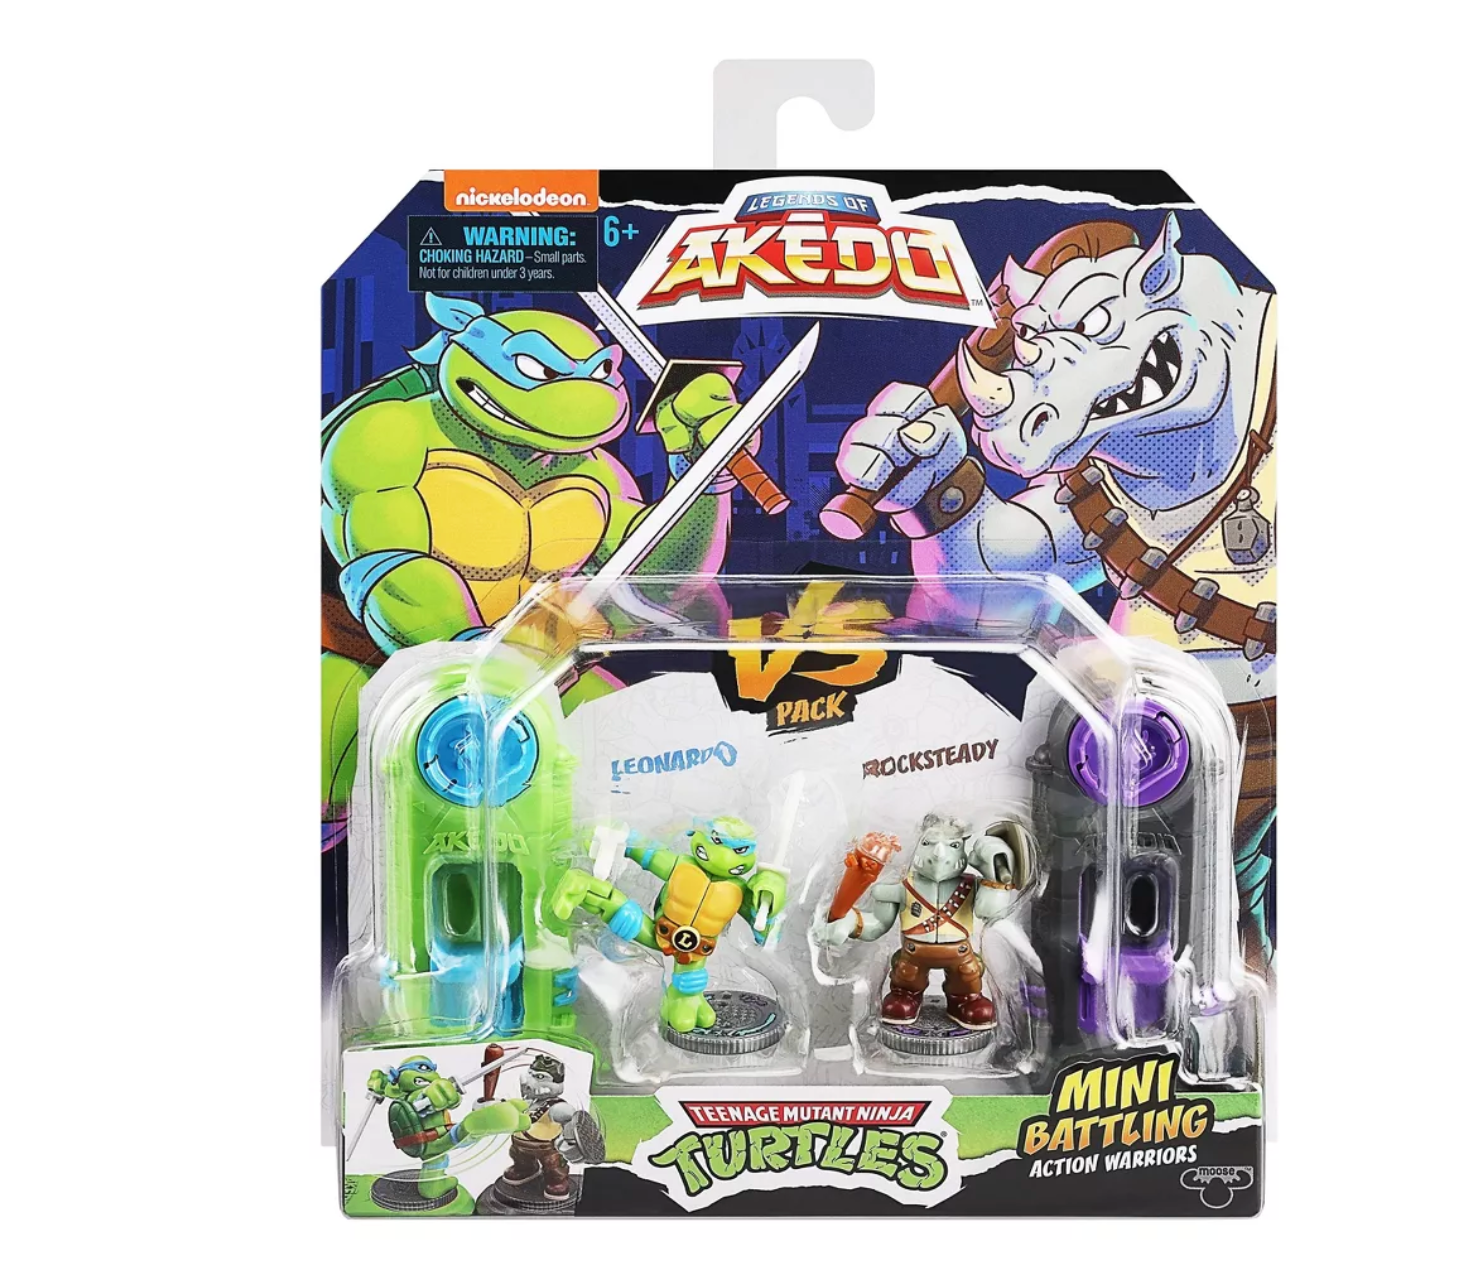 Akedo Teenage Mutant Ninja Turtles Vs sets